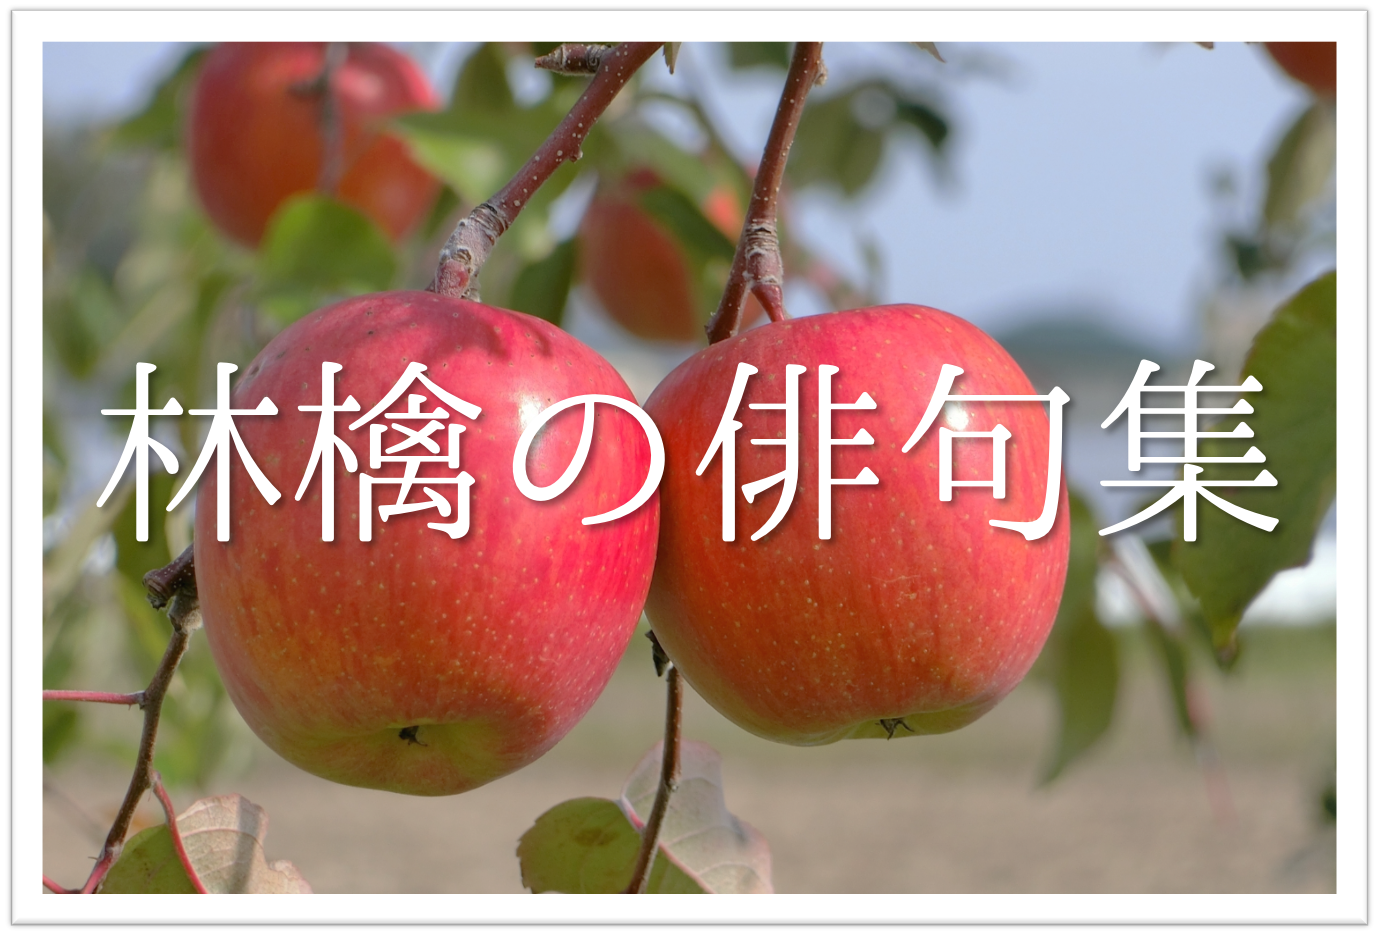 林檎 りんご の俳句 30選 秋に旬を迎える果物 リンゴが食べたくなる有名句 一般句を紹介 俳句の教科書 俳句の作り方 有名俳句の解説サイト